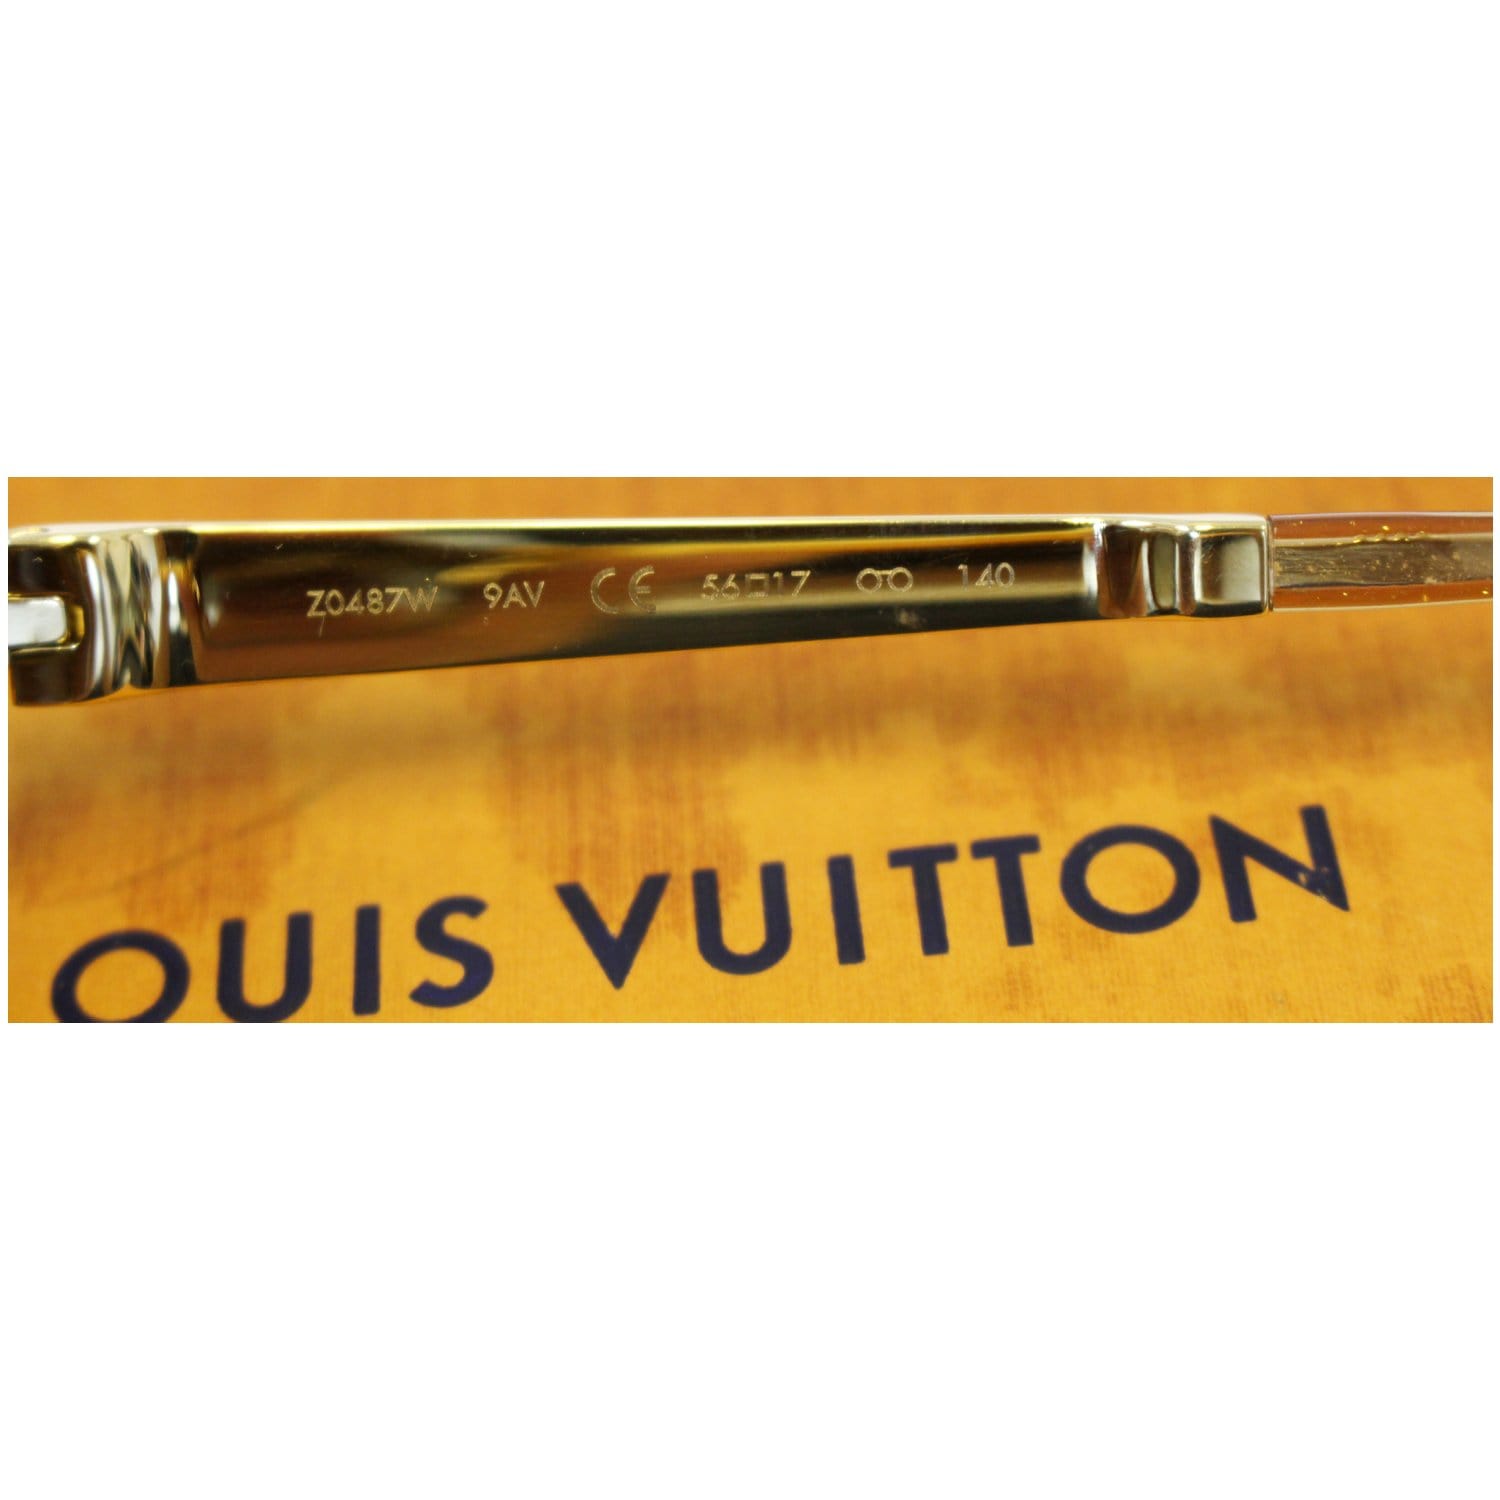 Louis Vuitton - Petit Soupcon Cat Eye Sunglasses Brown